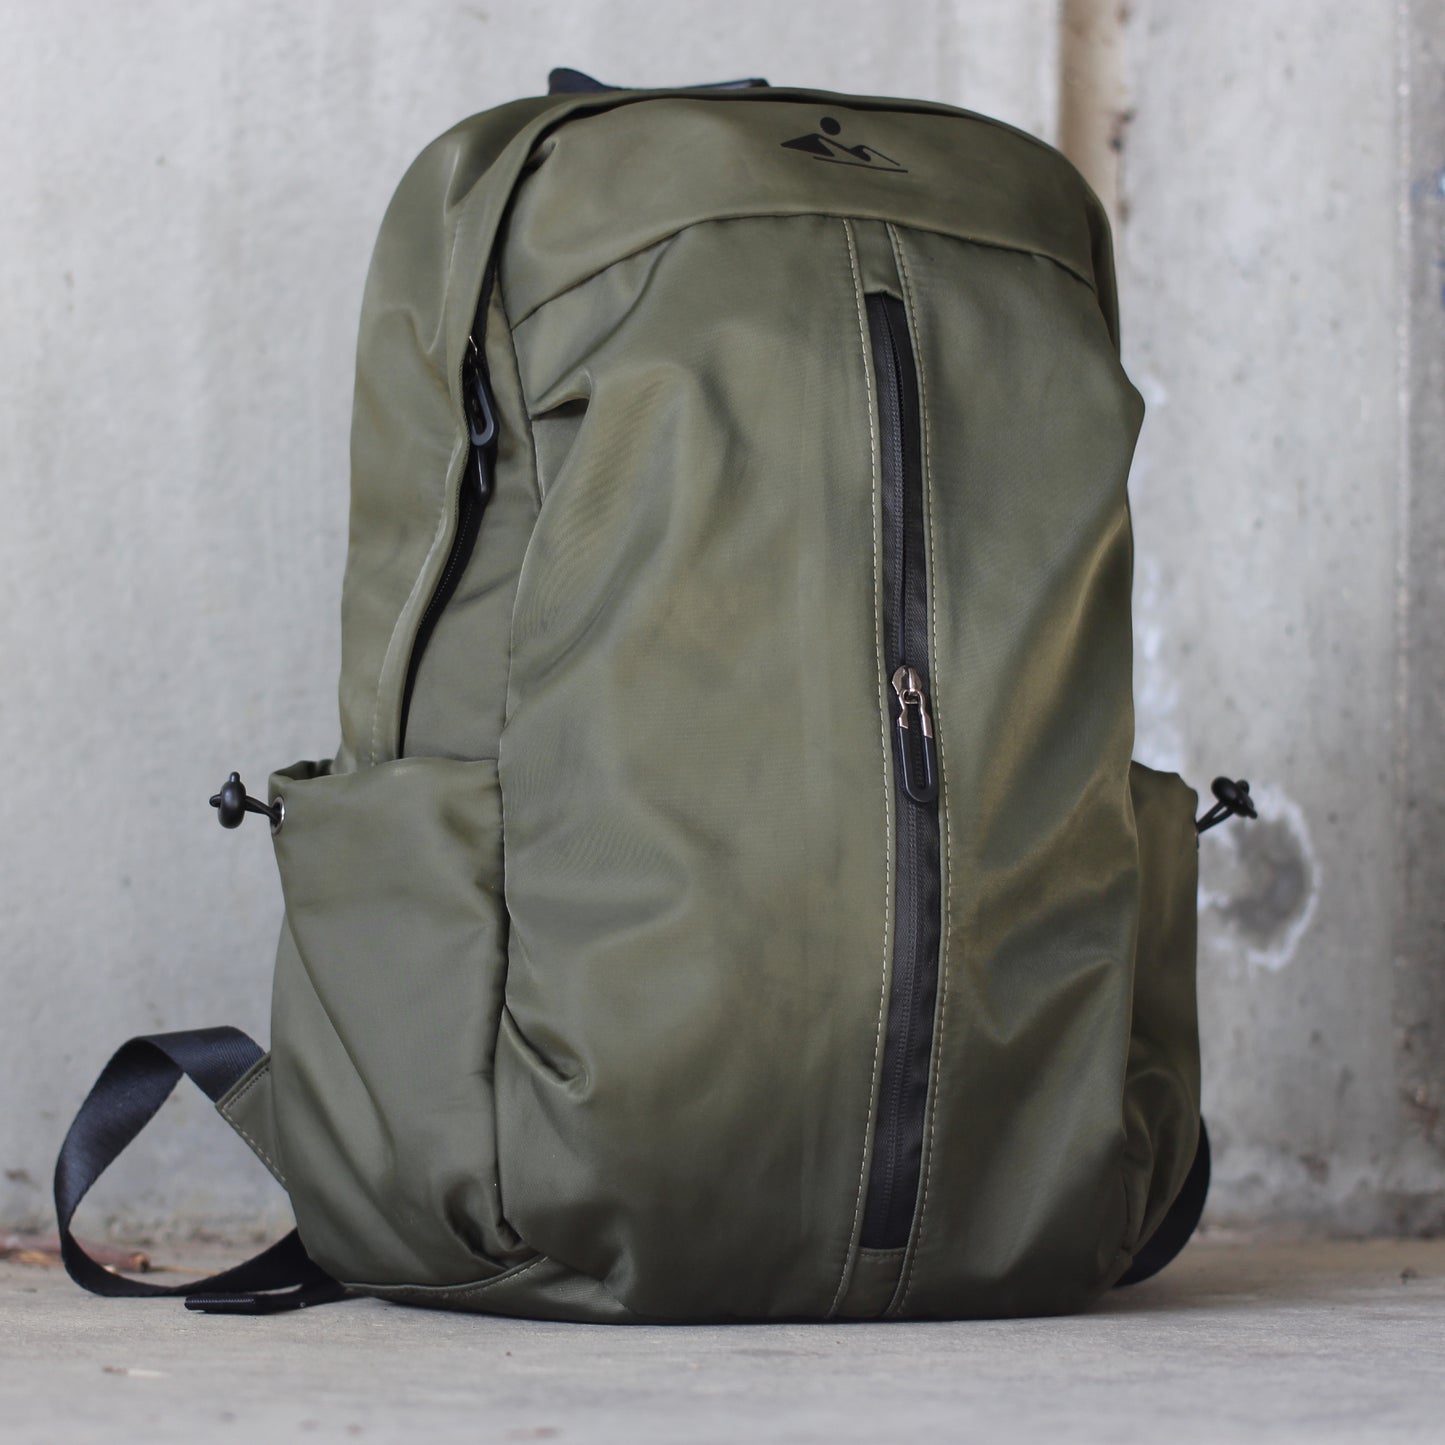 24/7 Waterproof Backpack